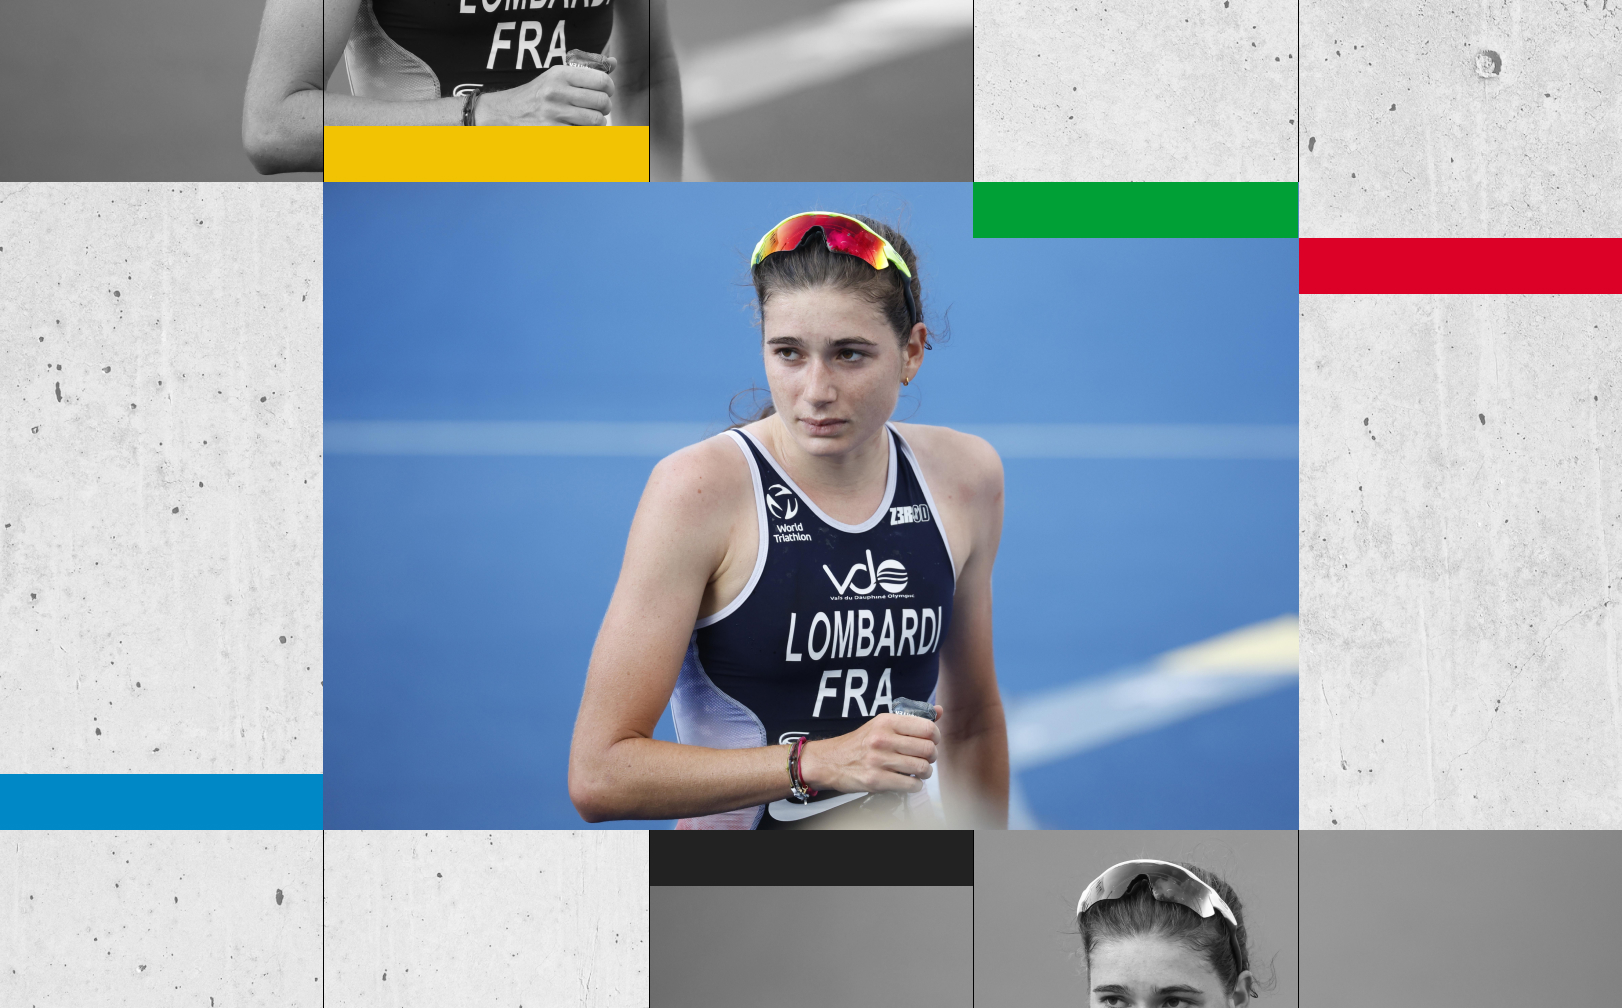 Médaillée de bronze des derniers championnats d'Europe de triathlon, Emma Lombardi rêve de briller à Paris. LP-DA/Presse Sports/Sébastien Boué